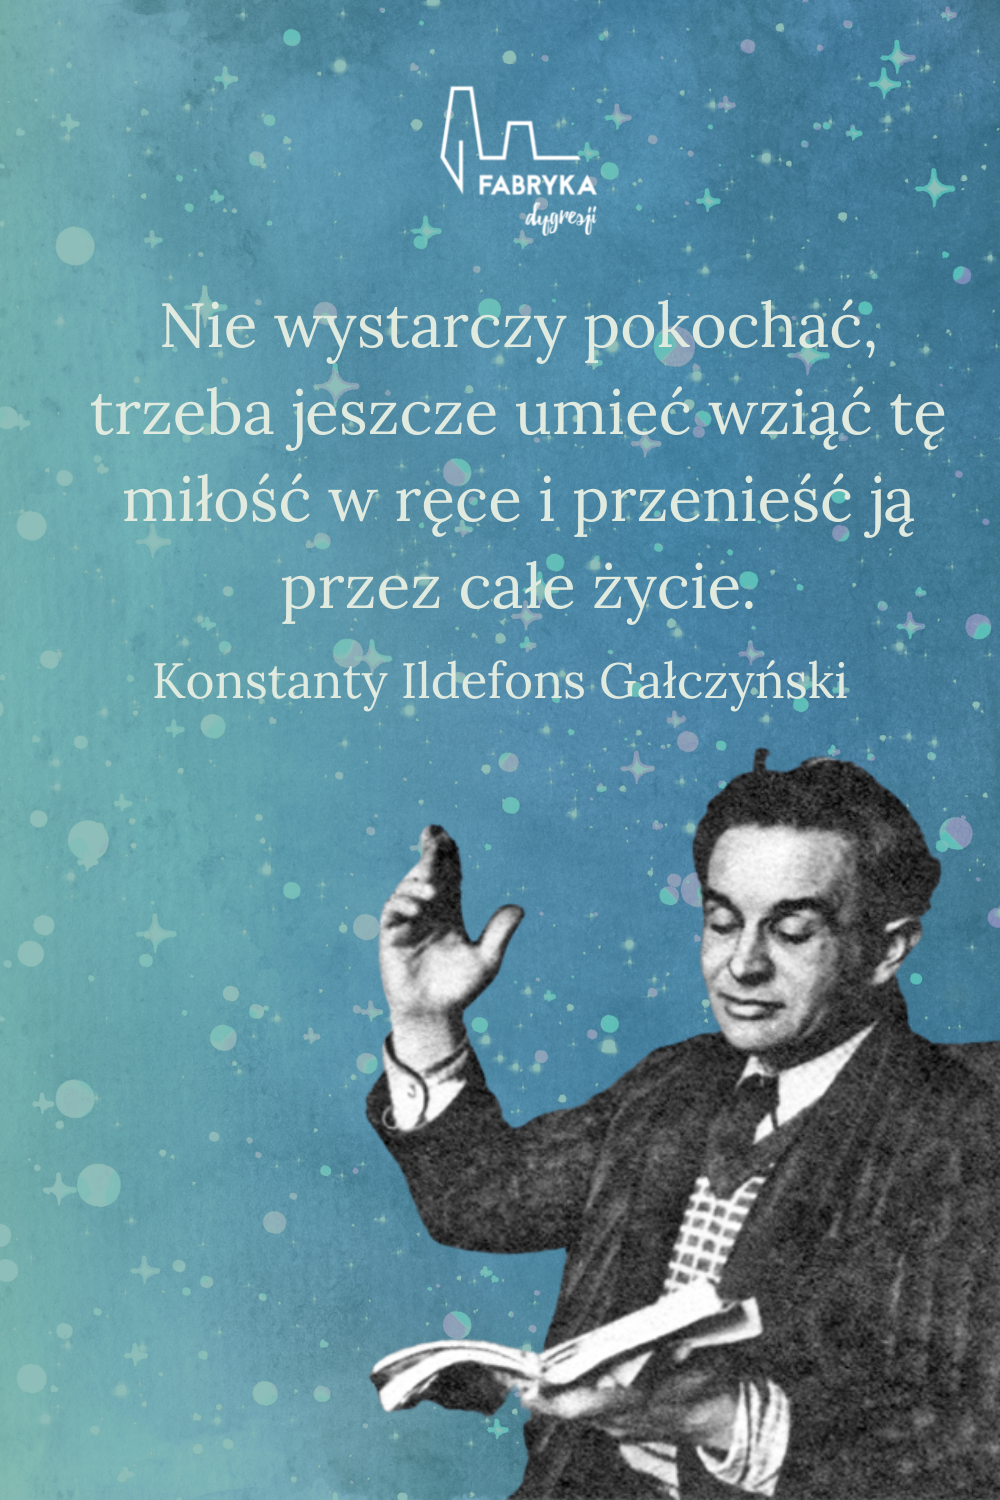 Konstanty Ildefons Gałczyński aforyzmy o miłości